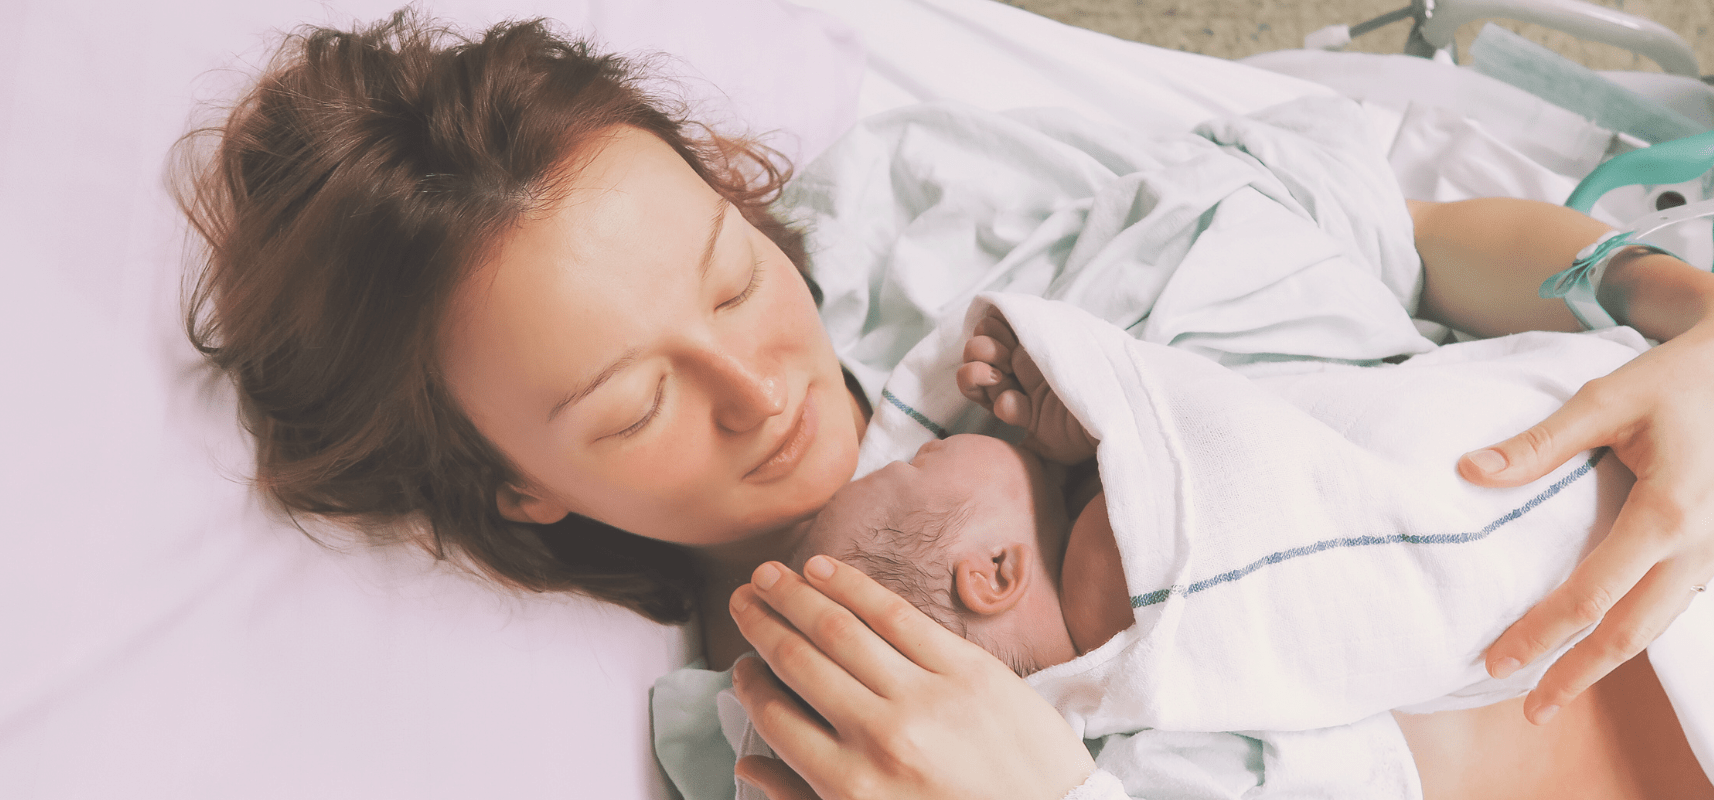 mom holding newborn baby via skin to skin